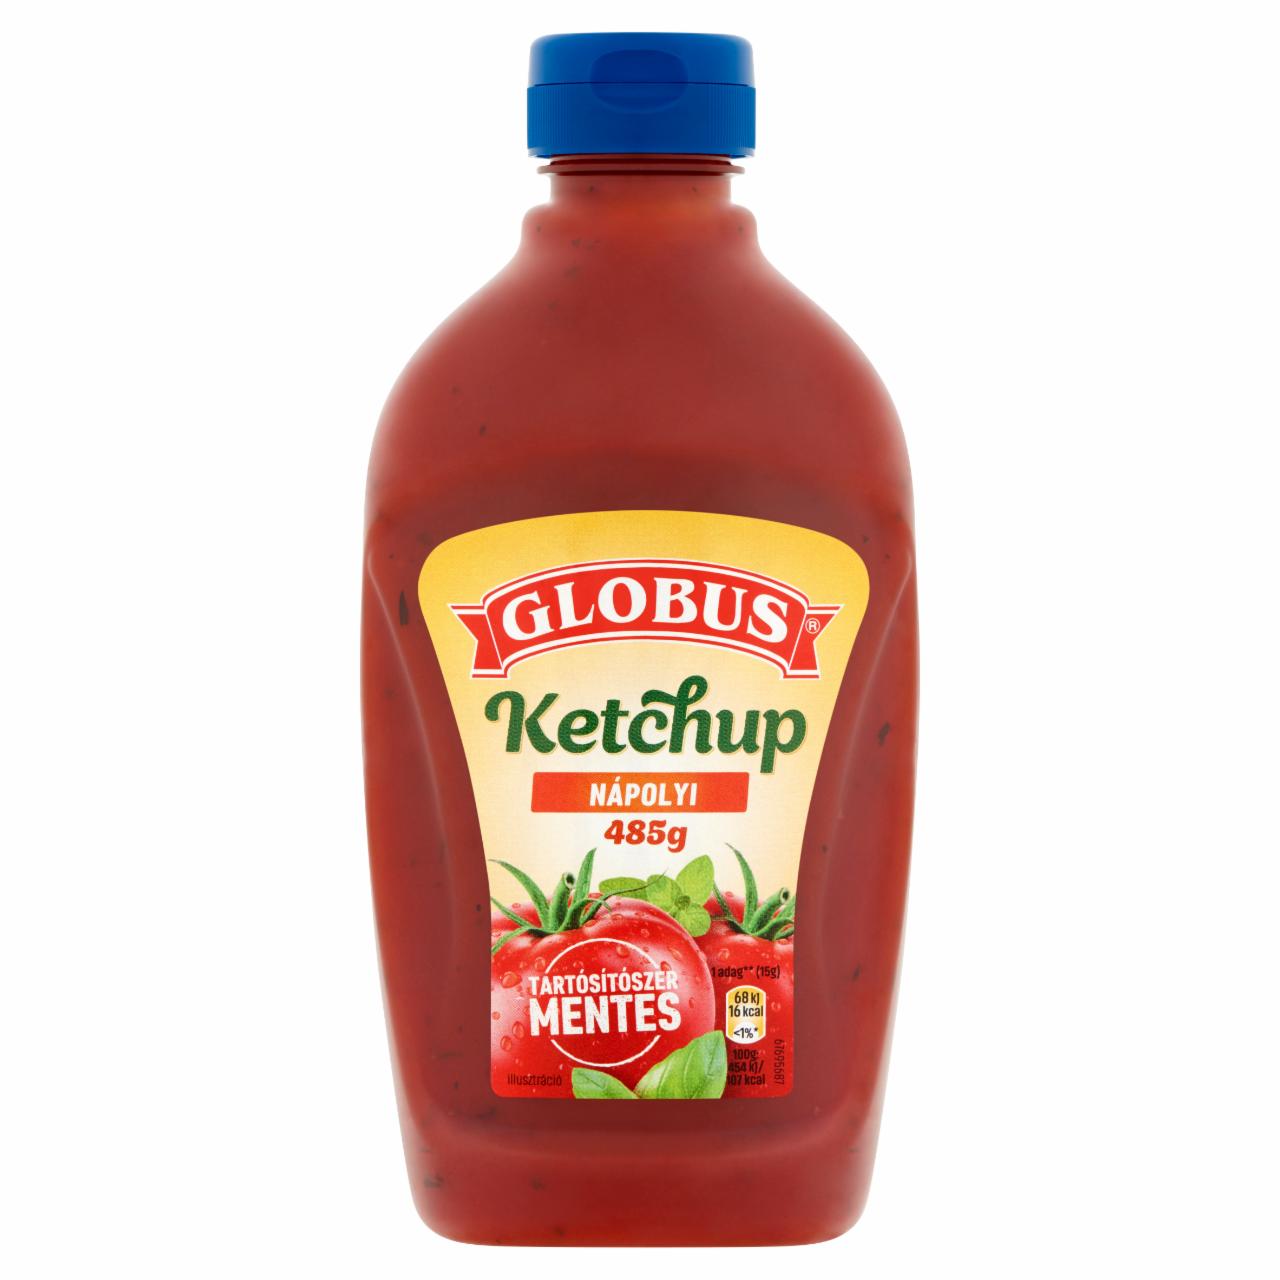 Képek - Globus nápolyi ketchup 485 g